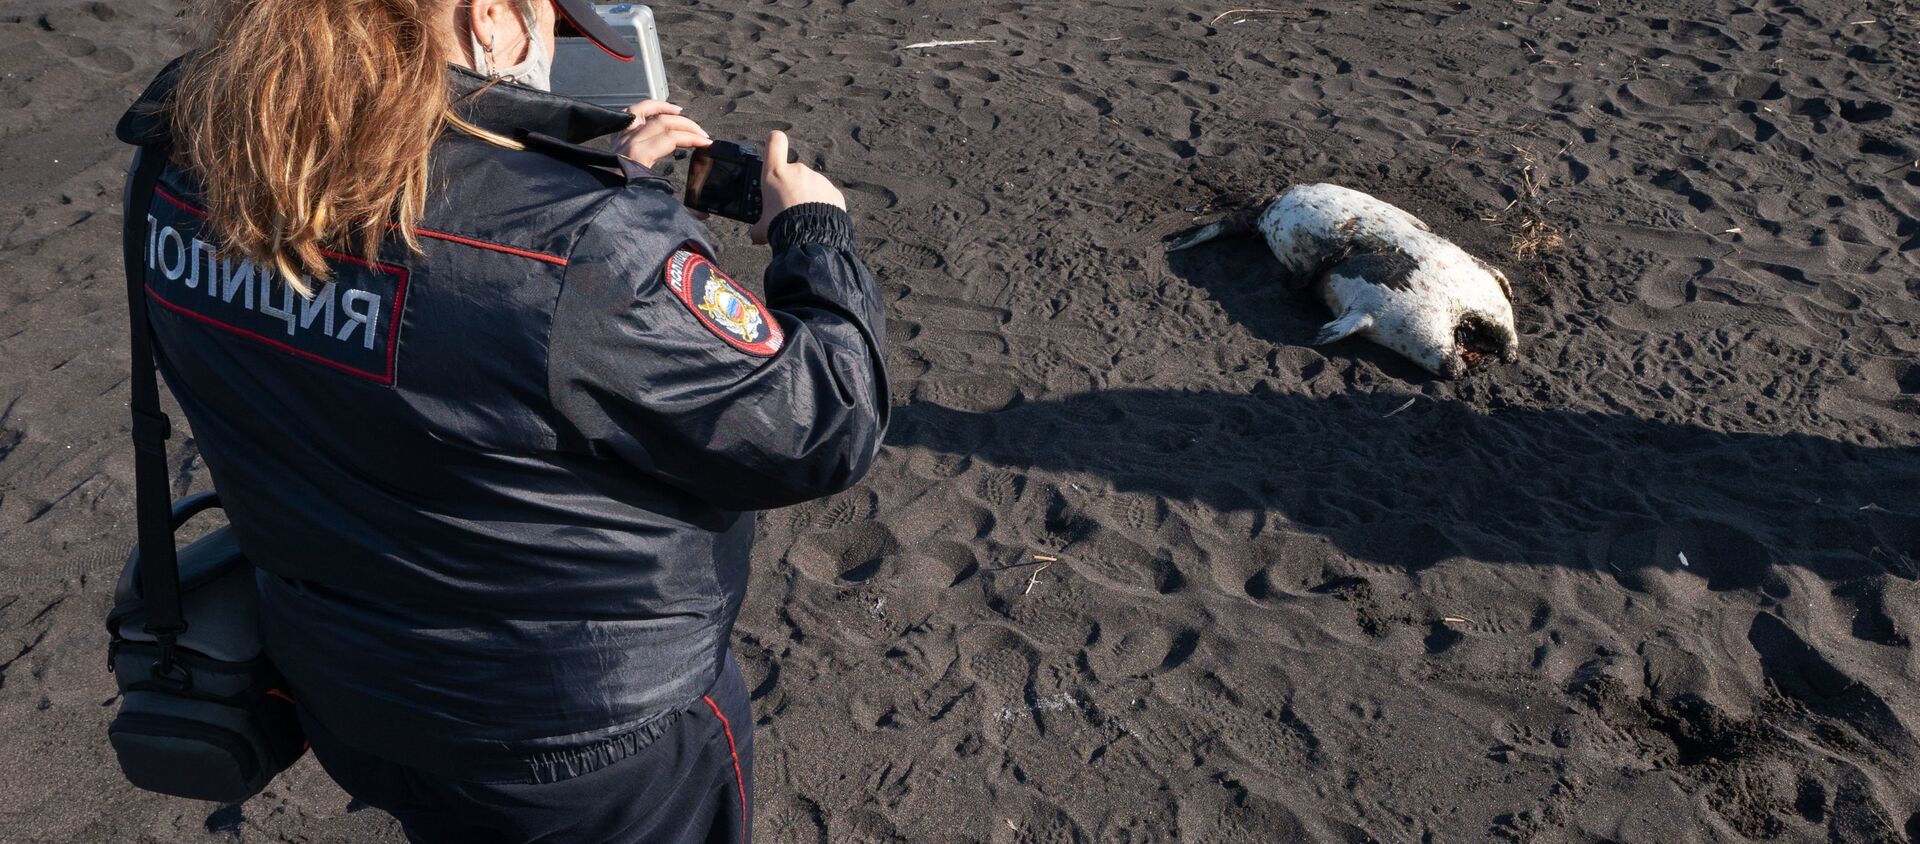 Một nhân viên của Bộ Nội vụ của Lãnh thổ Kamchatka trong các hoạt động tìm kiếm hoạt động tại địa điểm xảy ra vụ việc được cho là trên bãi biển Khalaktyrsky ở Kamchatka - Sputnik Việt Nam, 1920, 05.10.2020